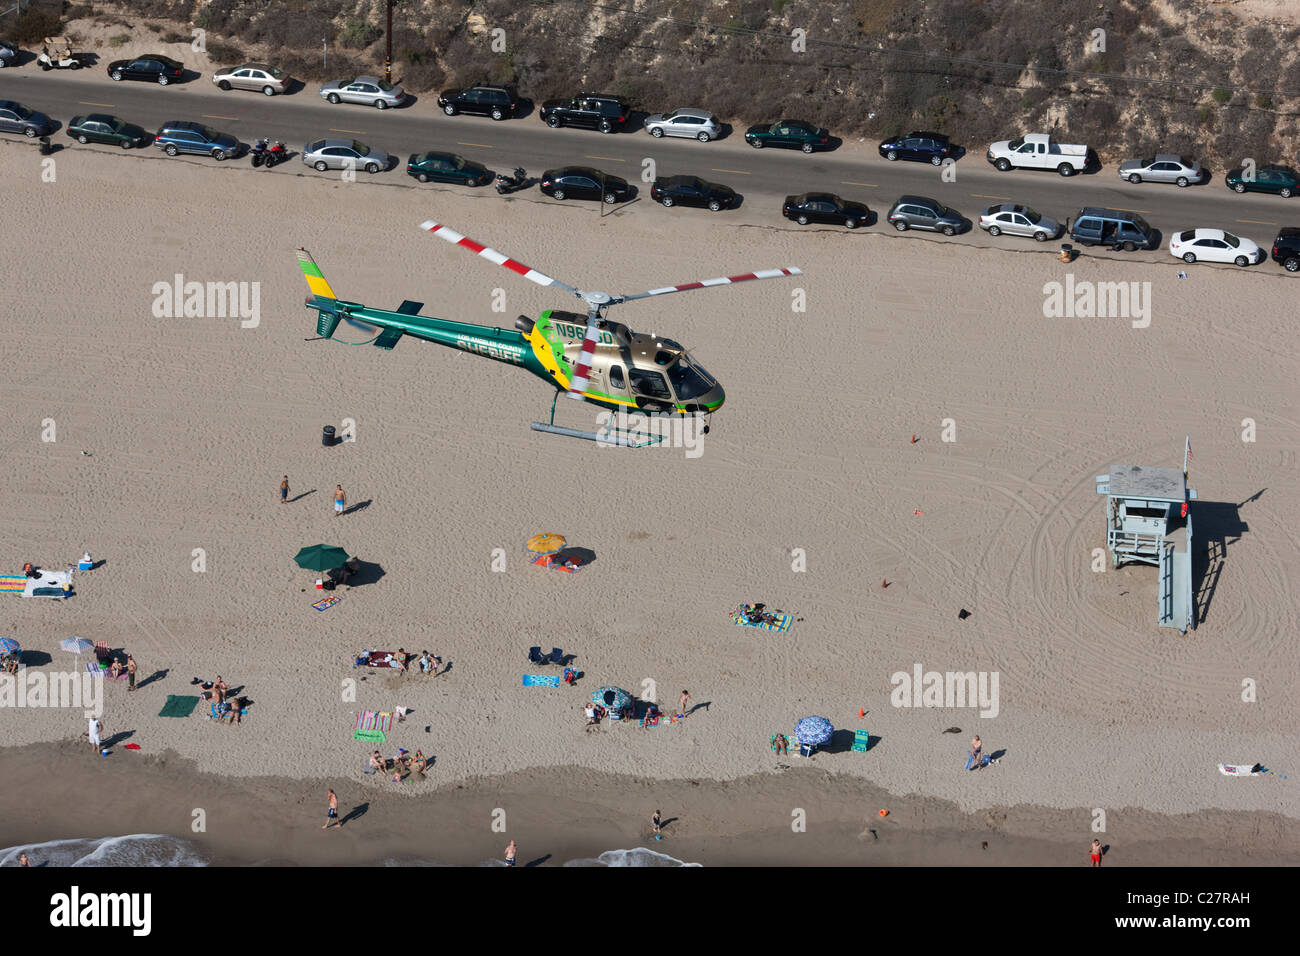 VISTA ARIA-ARIA. L'elicottero del Los Angeles Sheriff Department (as350 Eurocopter) pattuglia sulla spiaggia di Malibu, Los Angeles, California, USA. Foto Stock